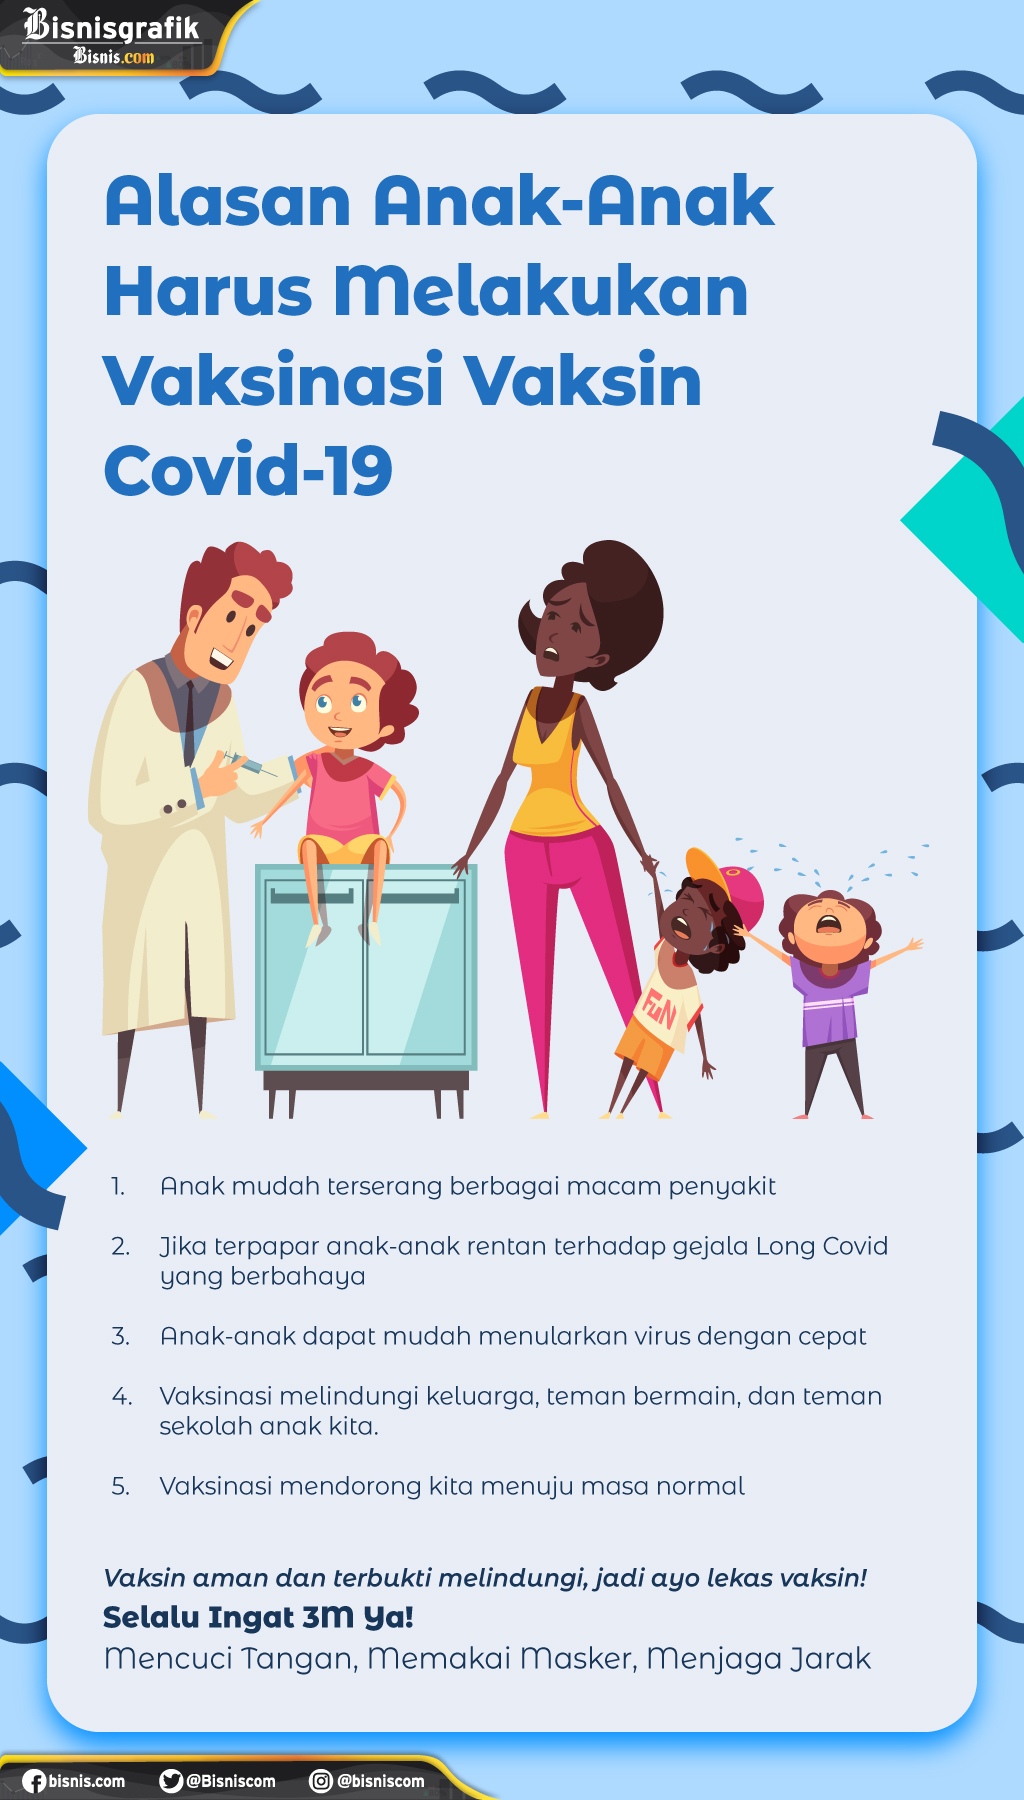  Alasan Anak-anak Harus Melakukan Vaksinasi Vaksin Covid-19